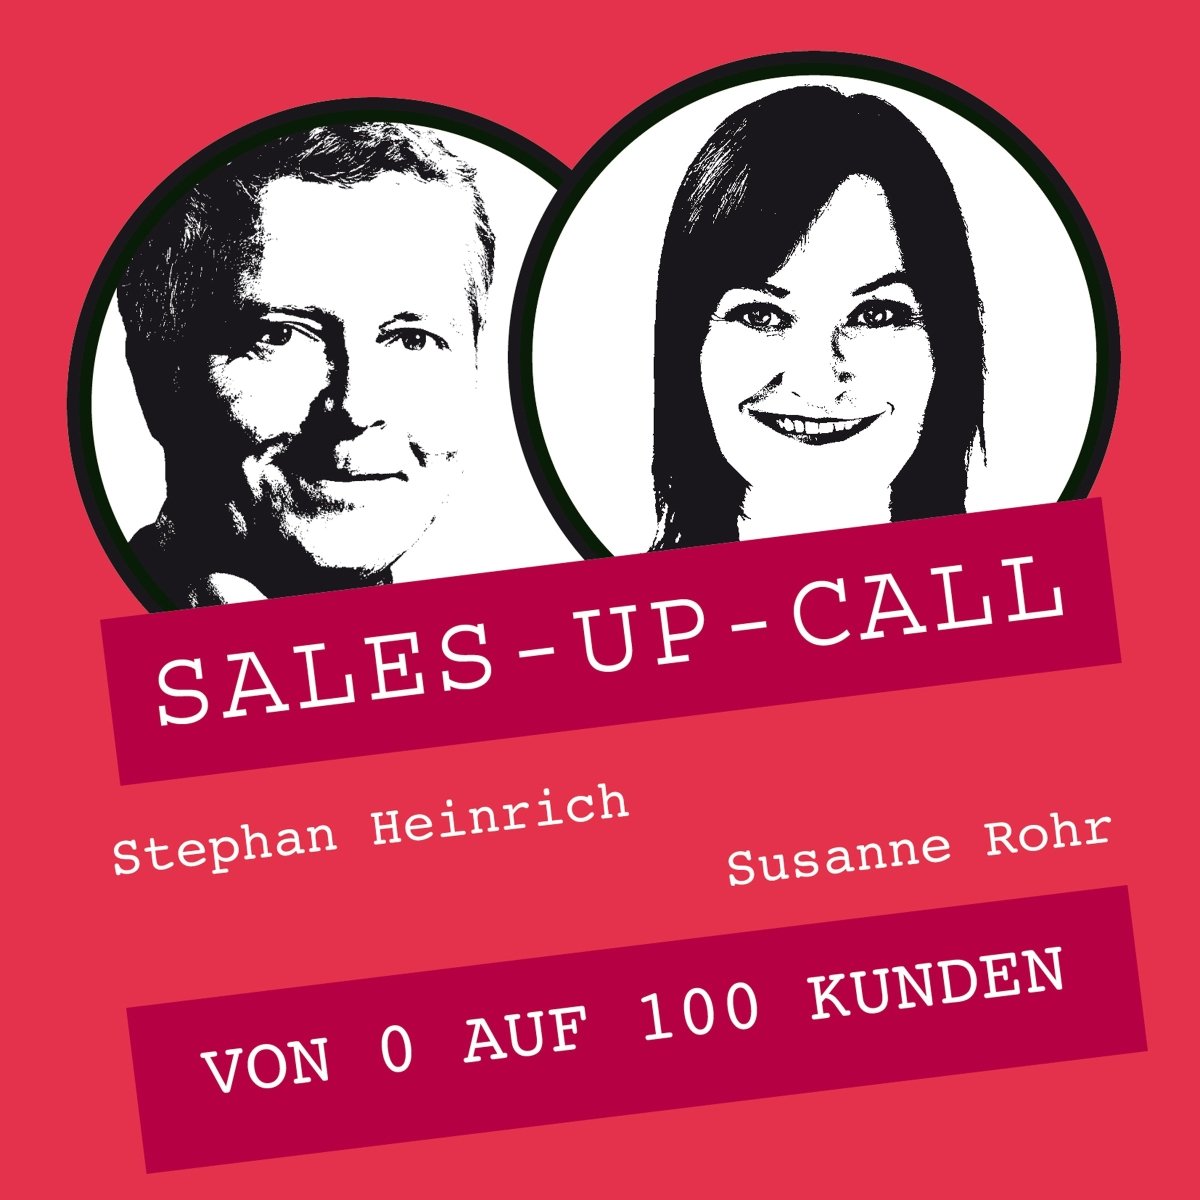 Von 0 auf 100 Kunden - Sales-up-Call - Stephan Heinrich